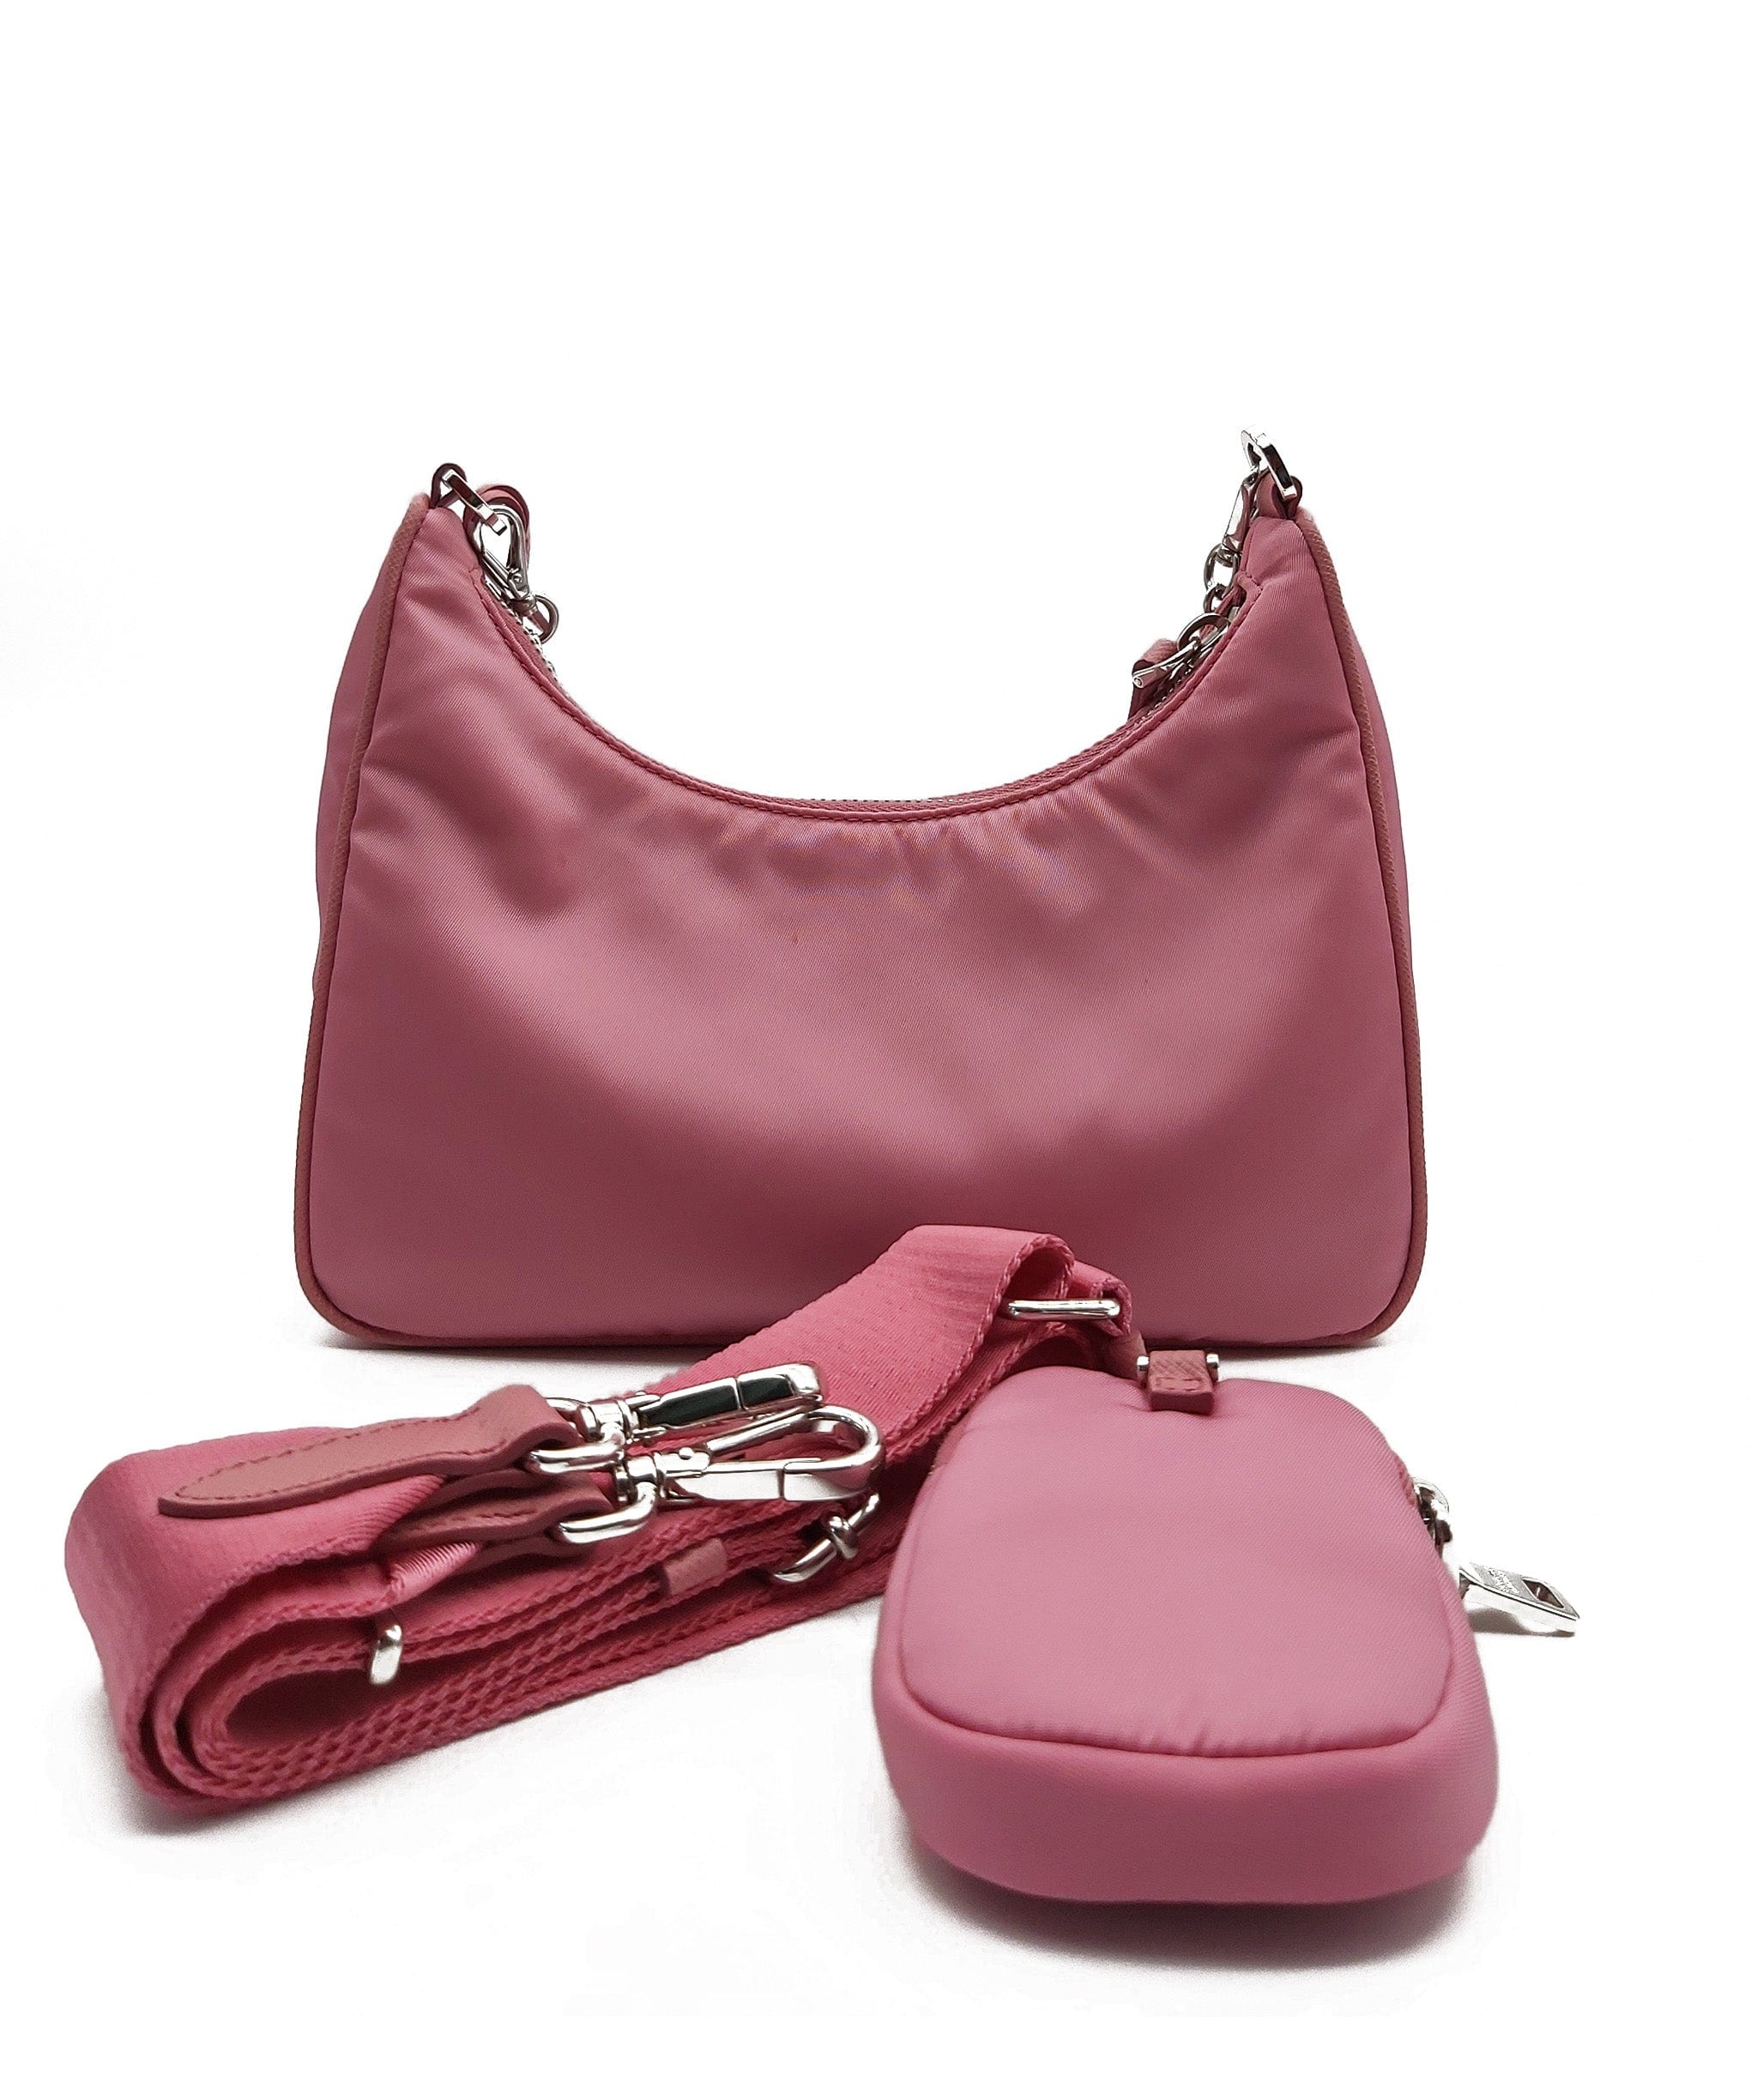 Prada Prada Pink Re edition Handbag RJC1505